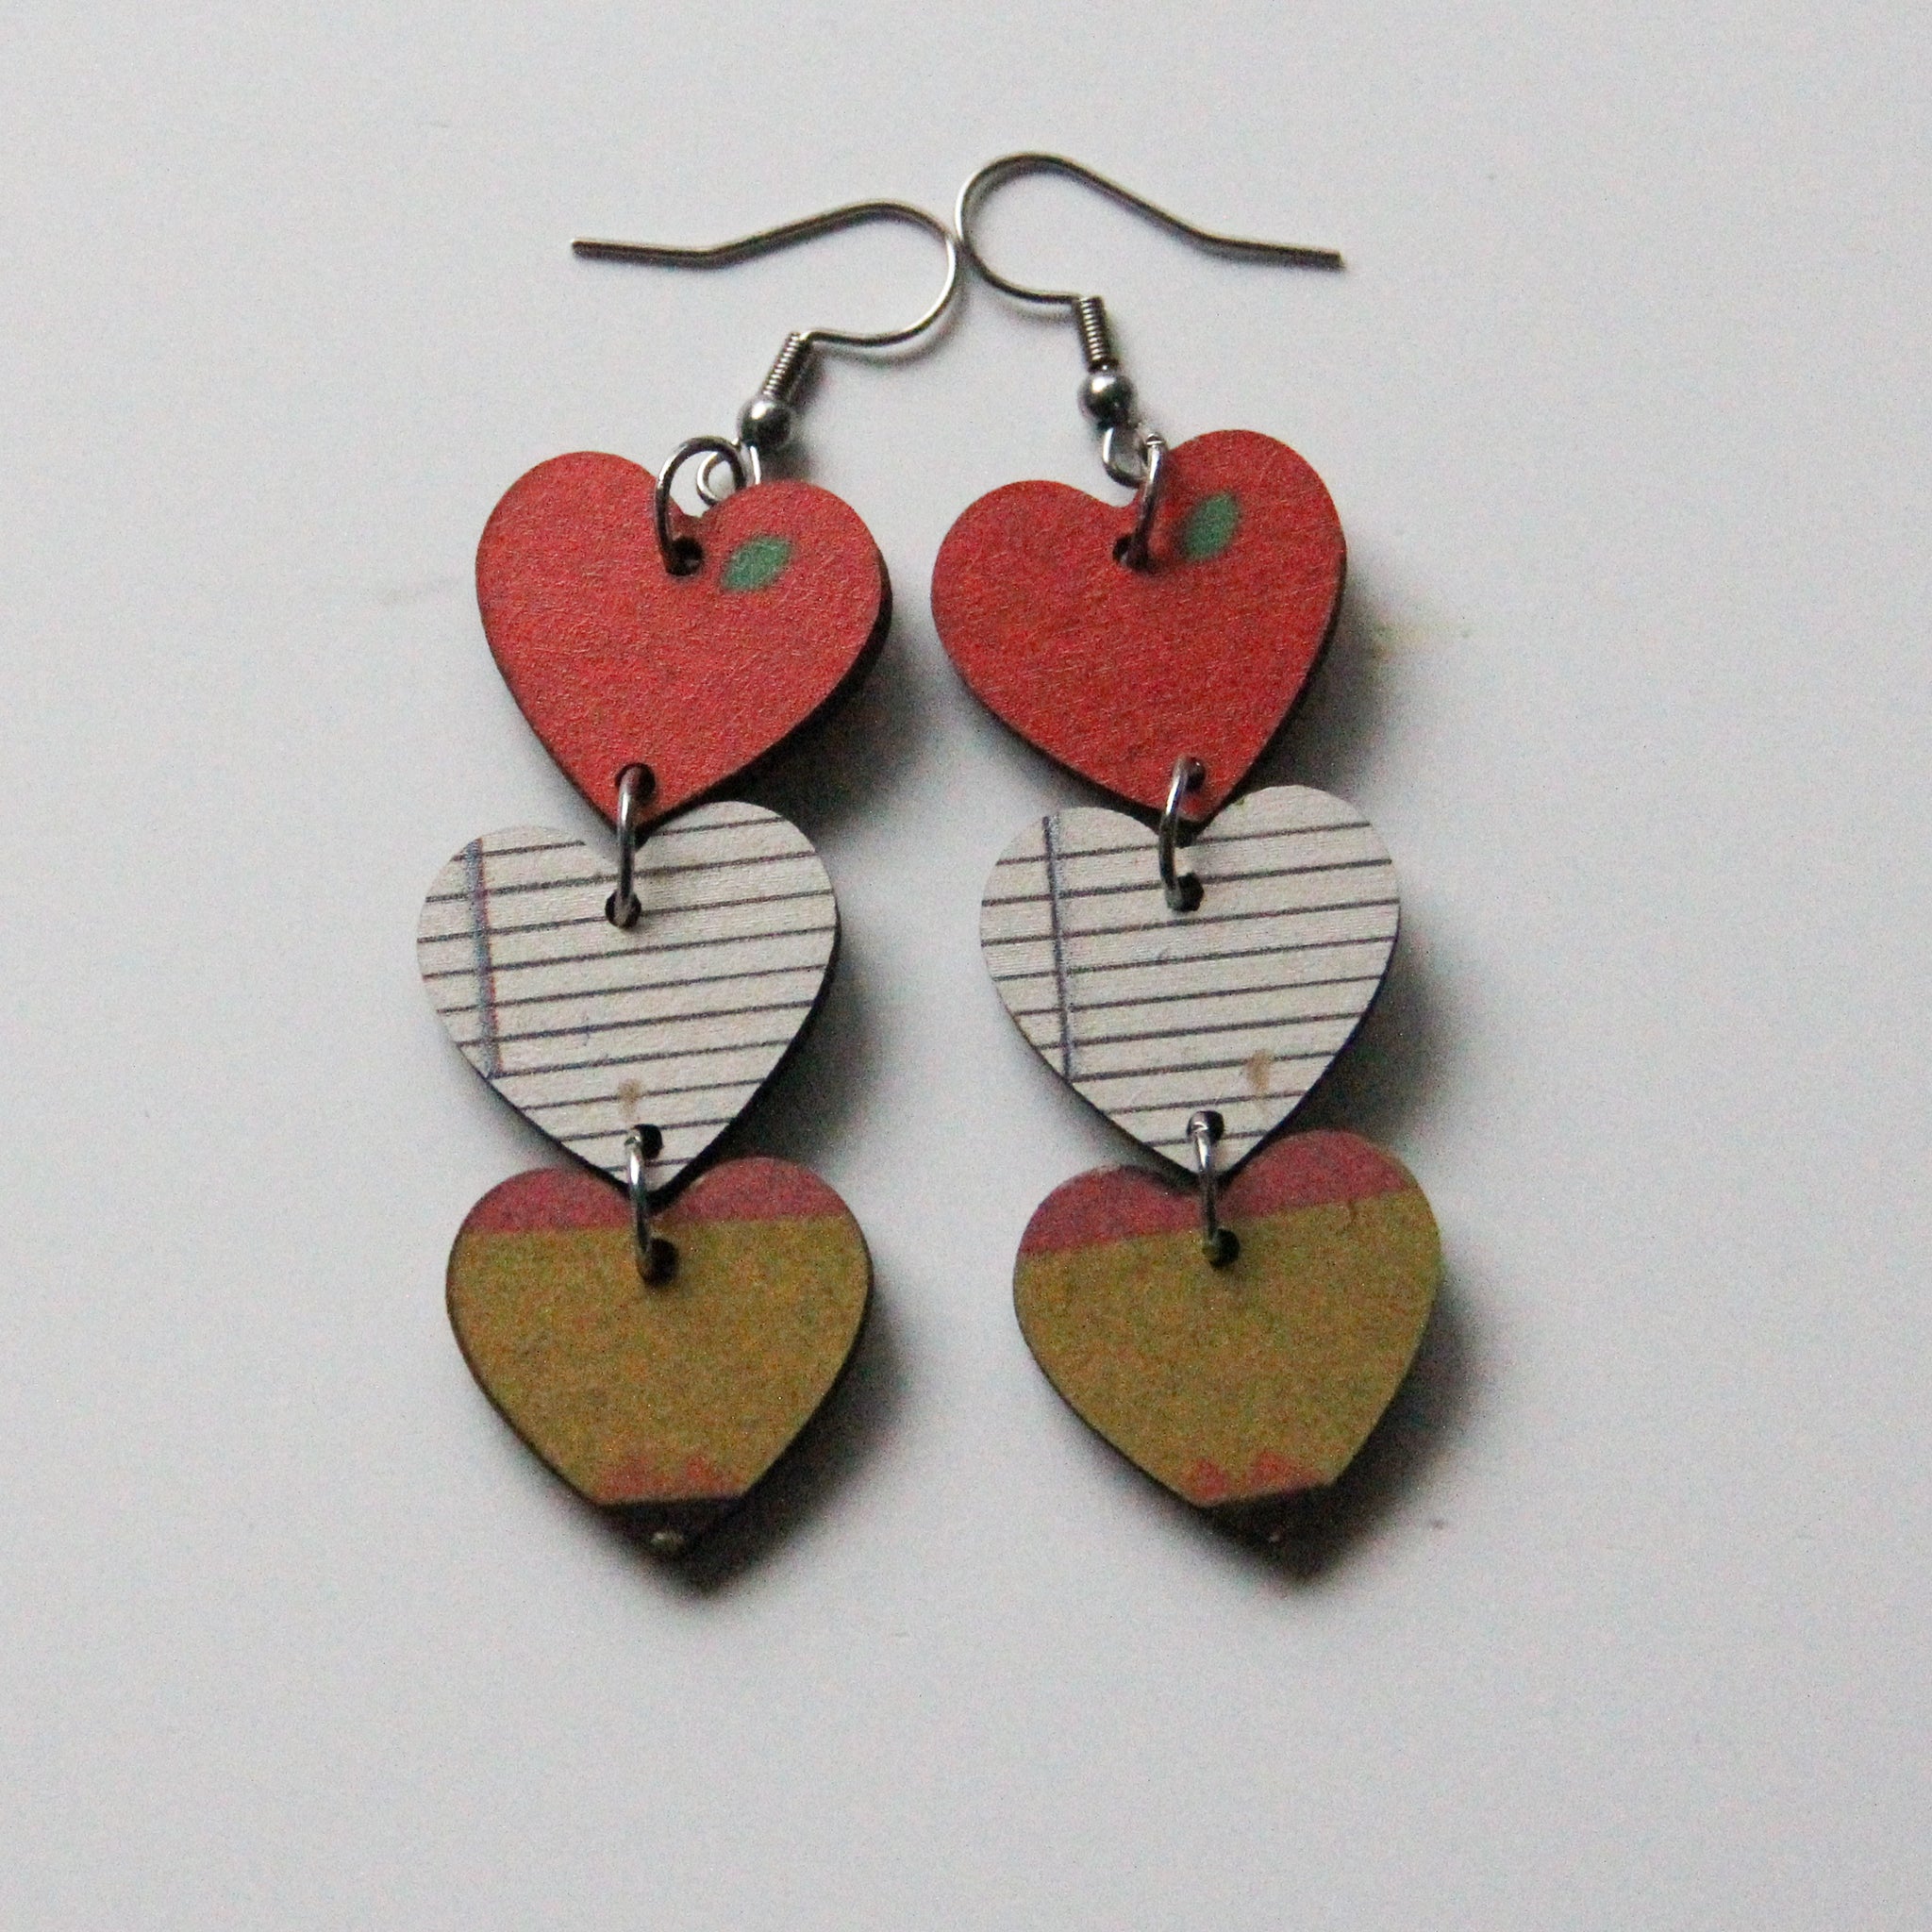 Maureen - Teacher's Pet - School Themed Wooden Hearts